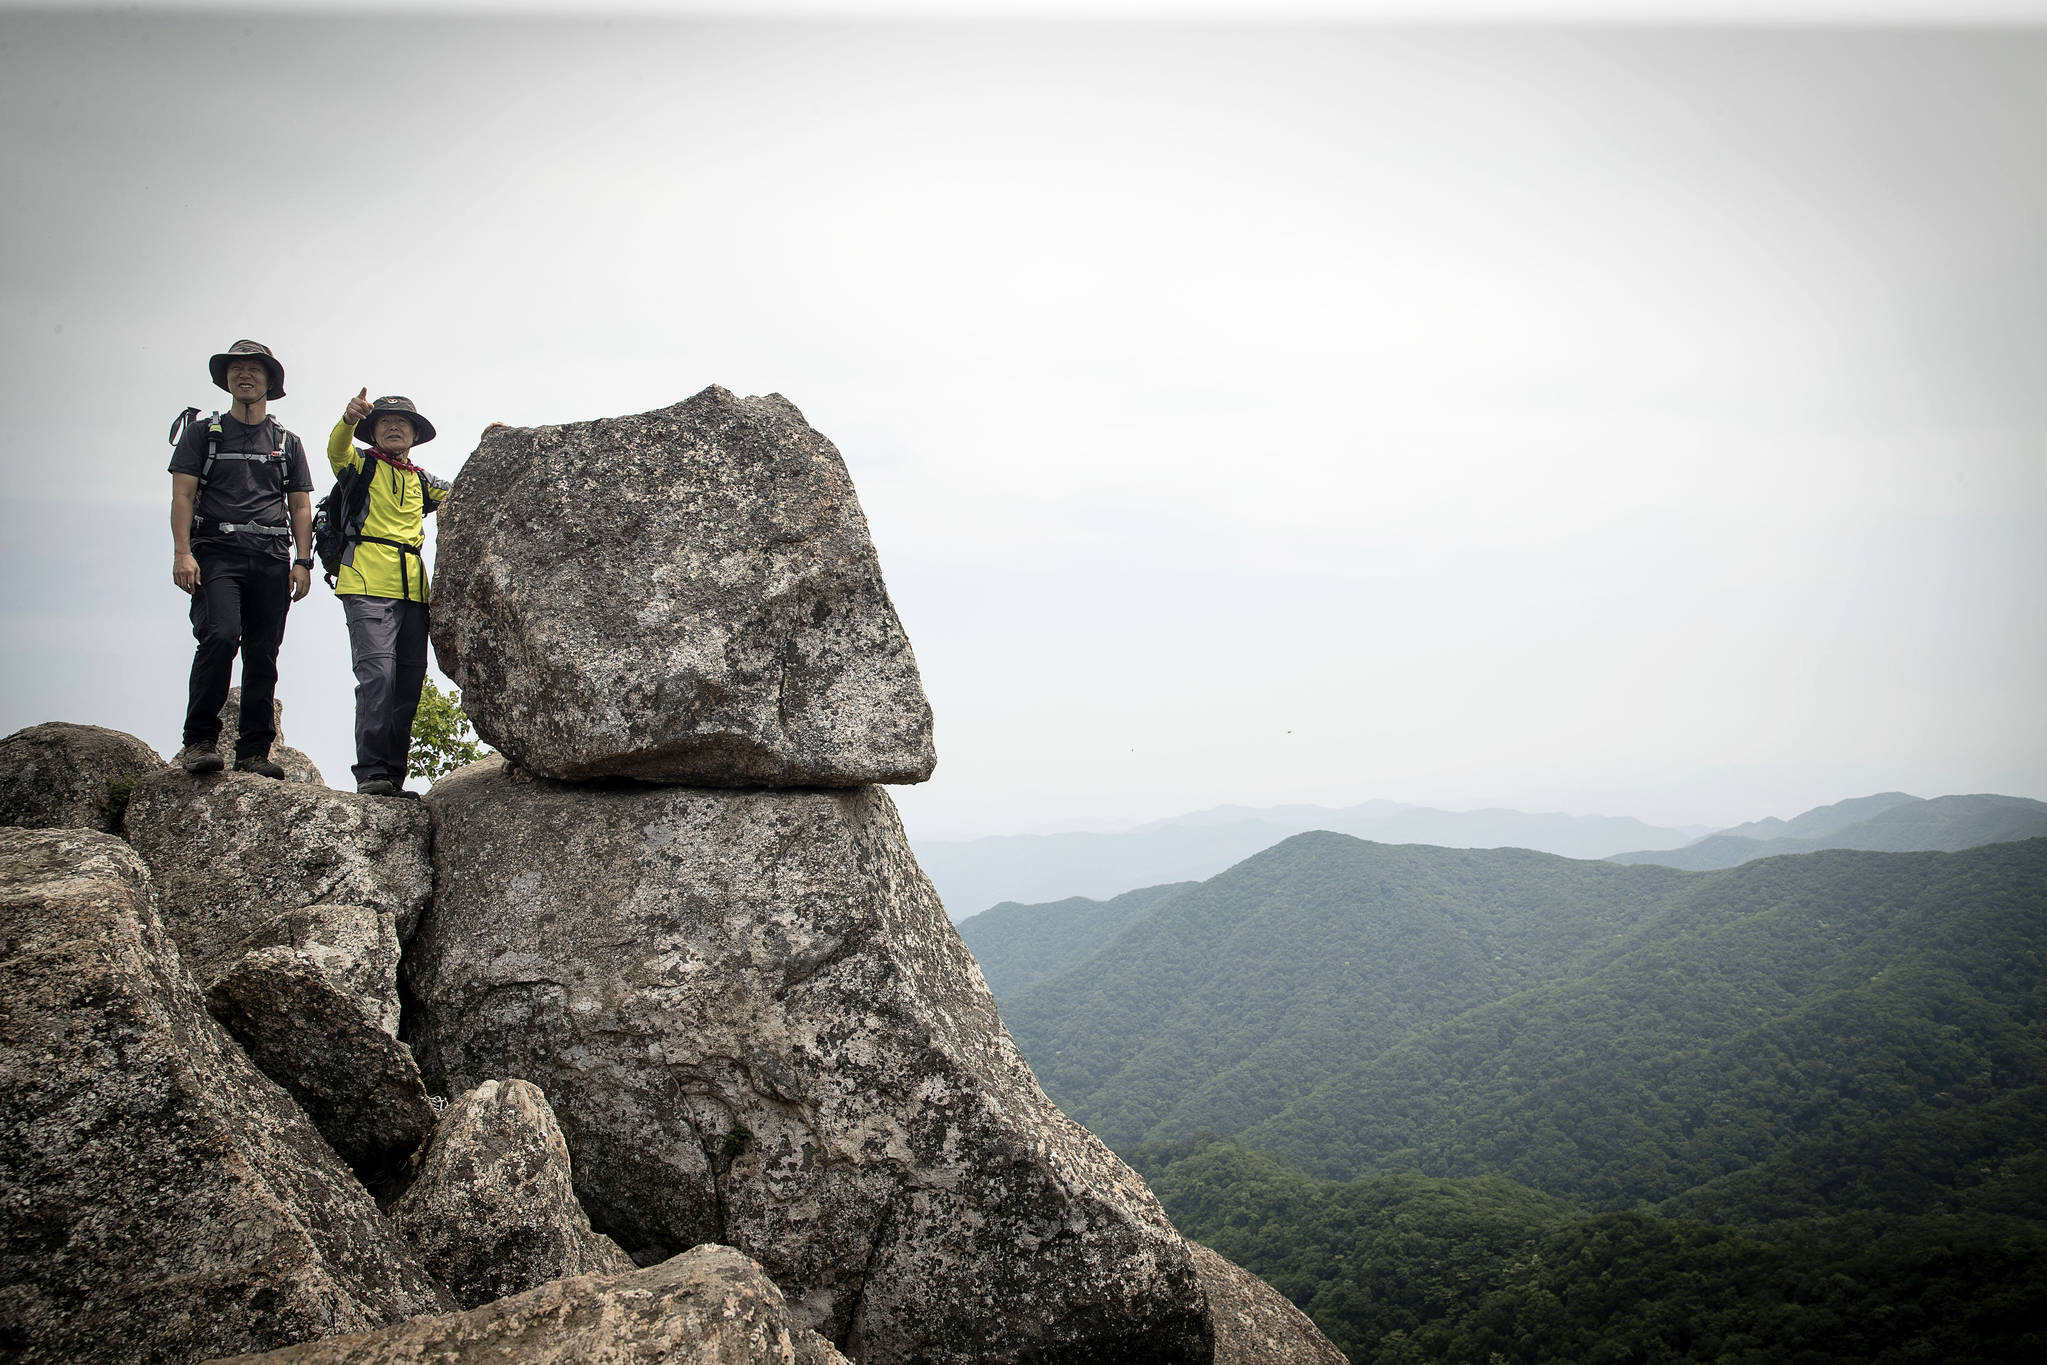  한국 100대 명산에 꼽히는 대암산 정상에 오르면 금강산이 보인다. 큰용늪에서 1.5㎞ 거리지만 큰 바위가 많아 온몸을 써야 한다. [장진영 기자]